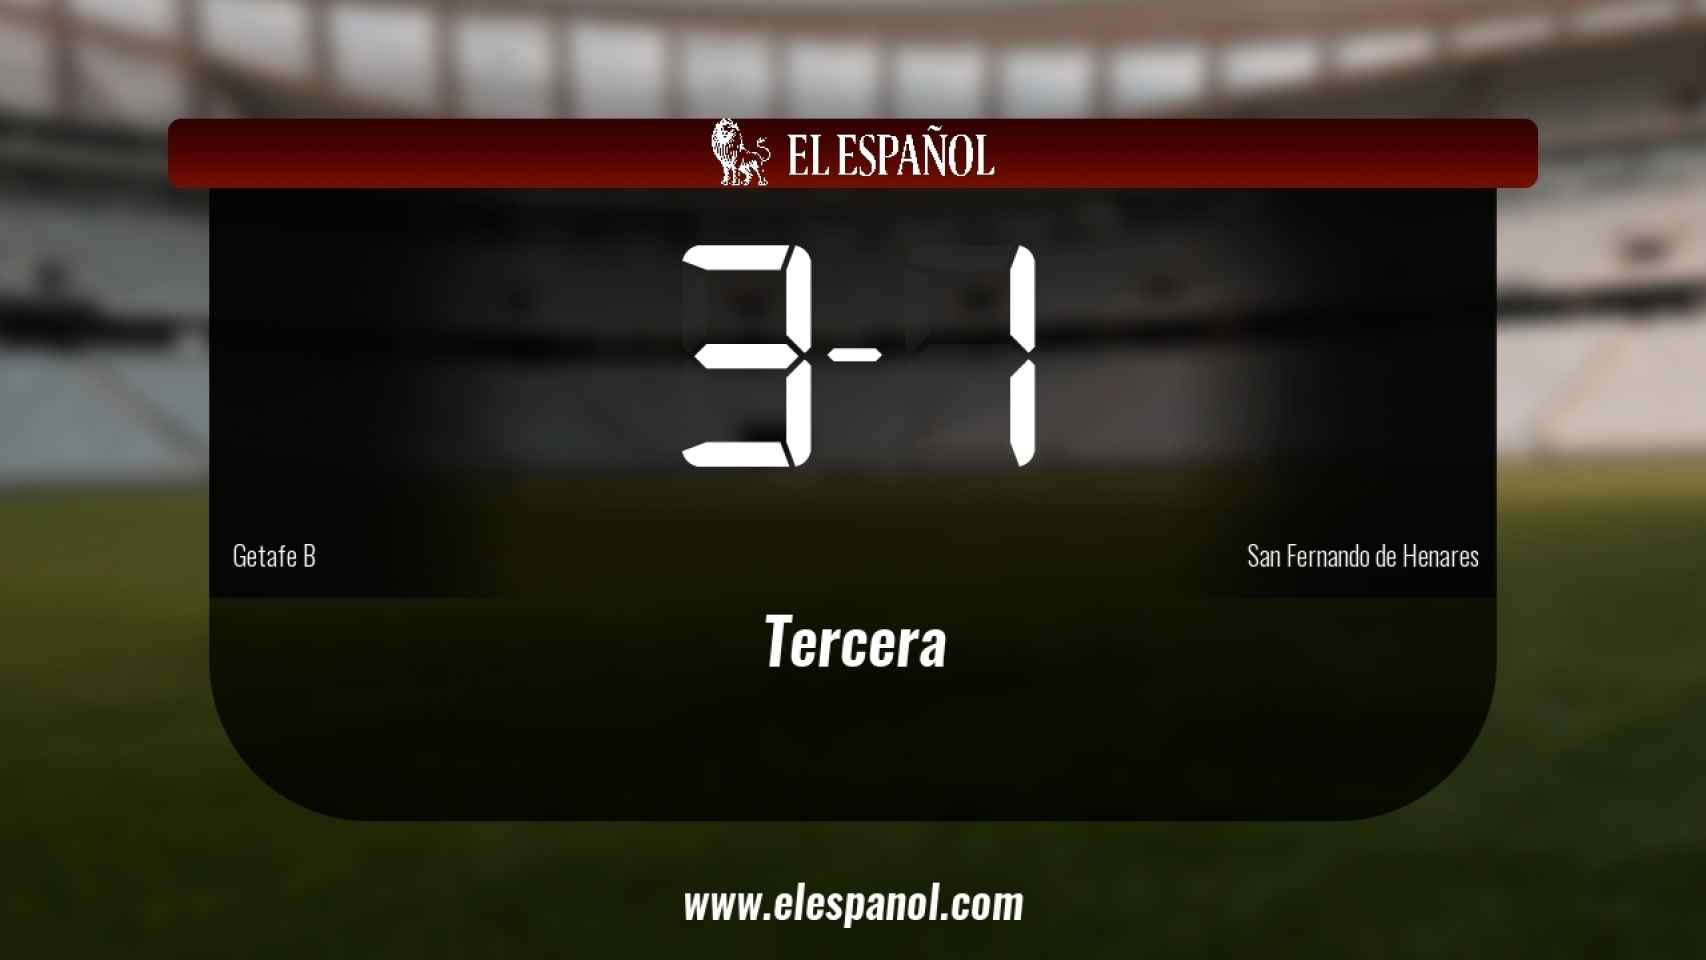 Victoria 3-1 del Getafe B ante el San Fernando de Henares